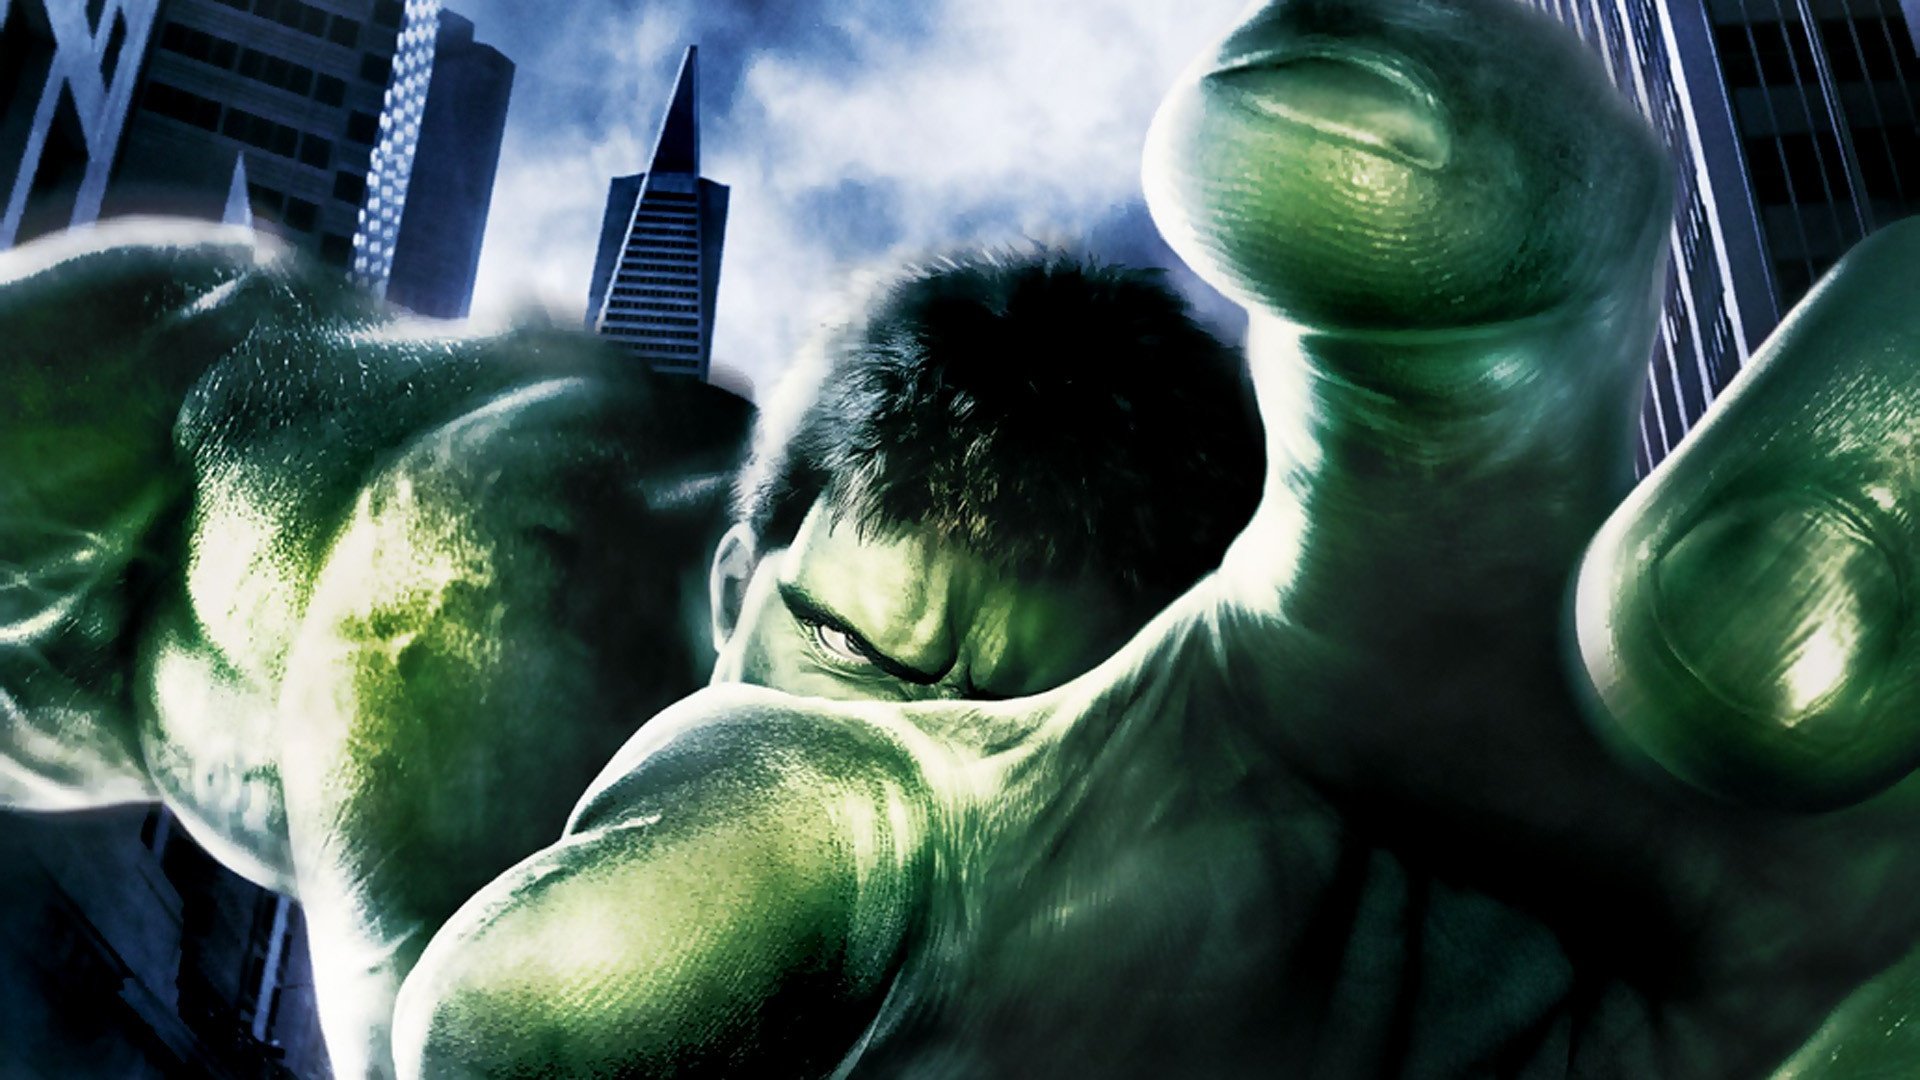 hulk, Movie comics green marvel Wallpaper